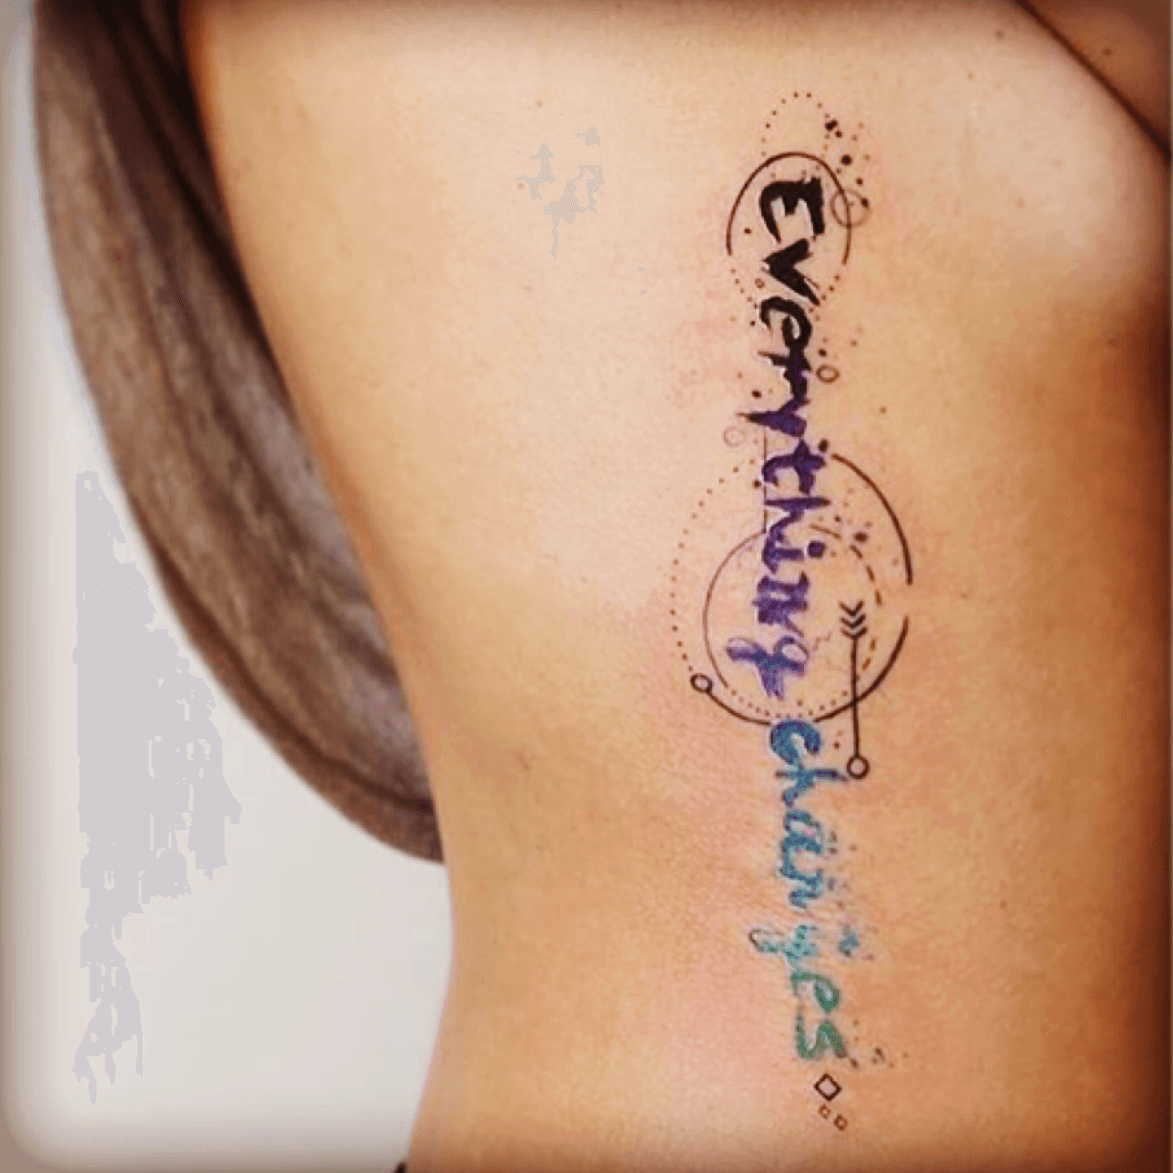 Arnold Chiari Malformation Tattoo  Tattoos Chiari Behind ear tattoo